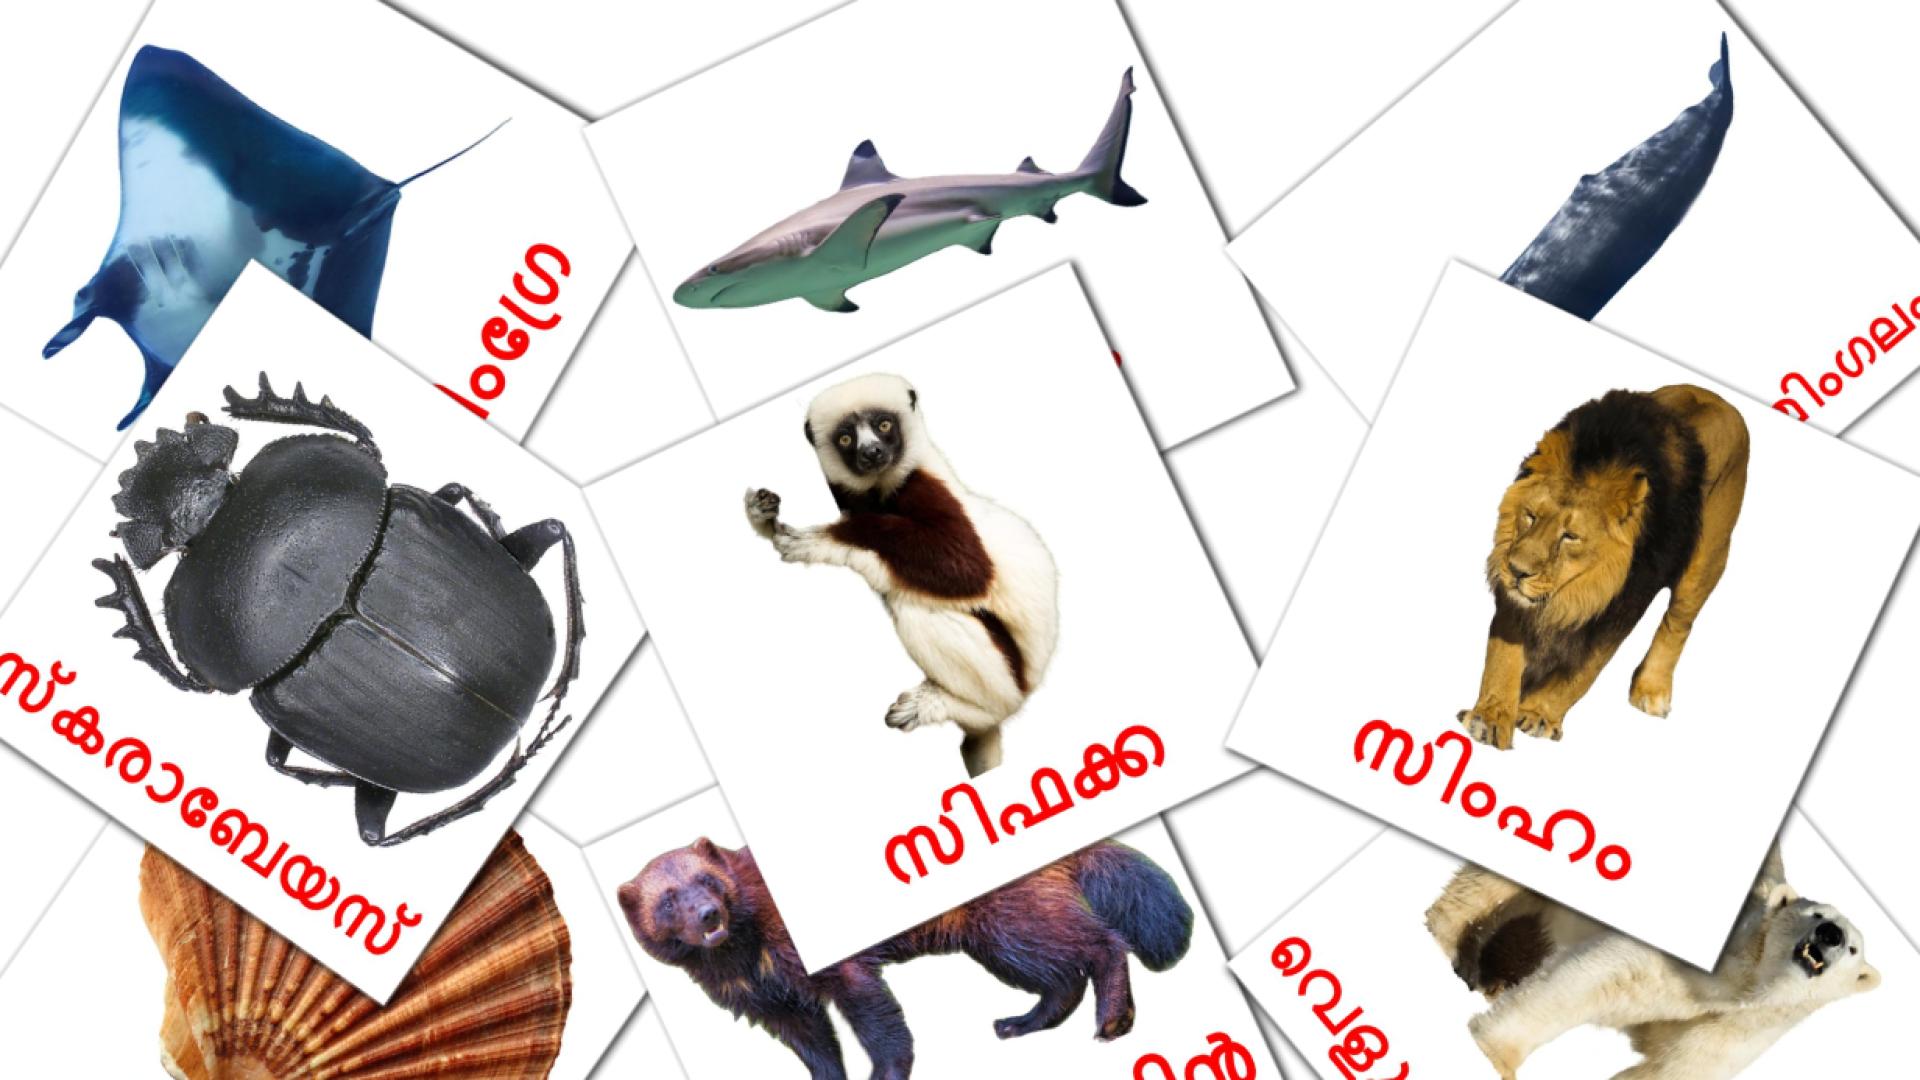 malayalam tarjetas de vocabulario en മൃഗങ്ങൾ